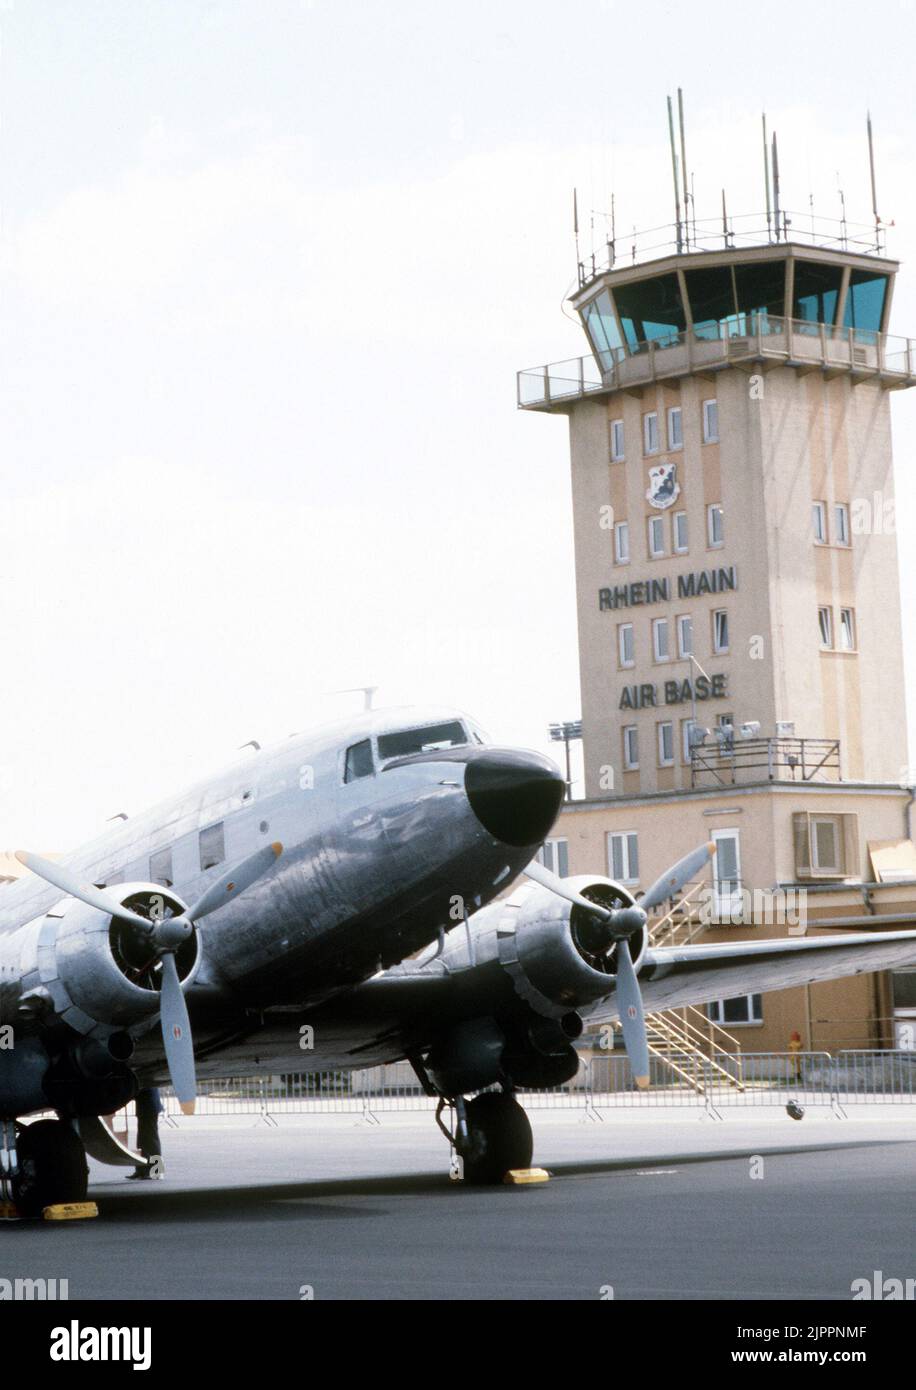 Blick auf ein C-47 Skytrain-Flugzeug, das während der Feierlichkeiten zum 40.. Jahrestag des Beginns der Berliner Luftbrücke in der Nähe des Basiskontrollturms geparkt ist. Skytrain-Flugzeuge wurden ausgiebig eingesetzt, um Material während des Luftauftriebs zu bewegen Stockfoto